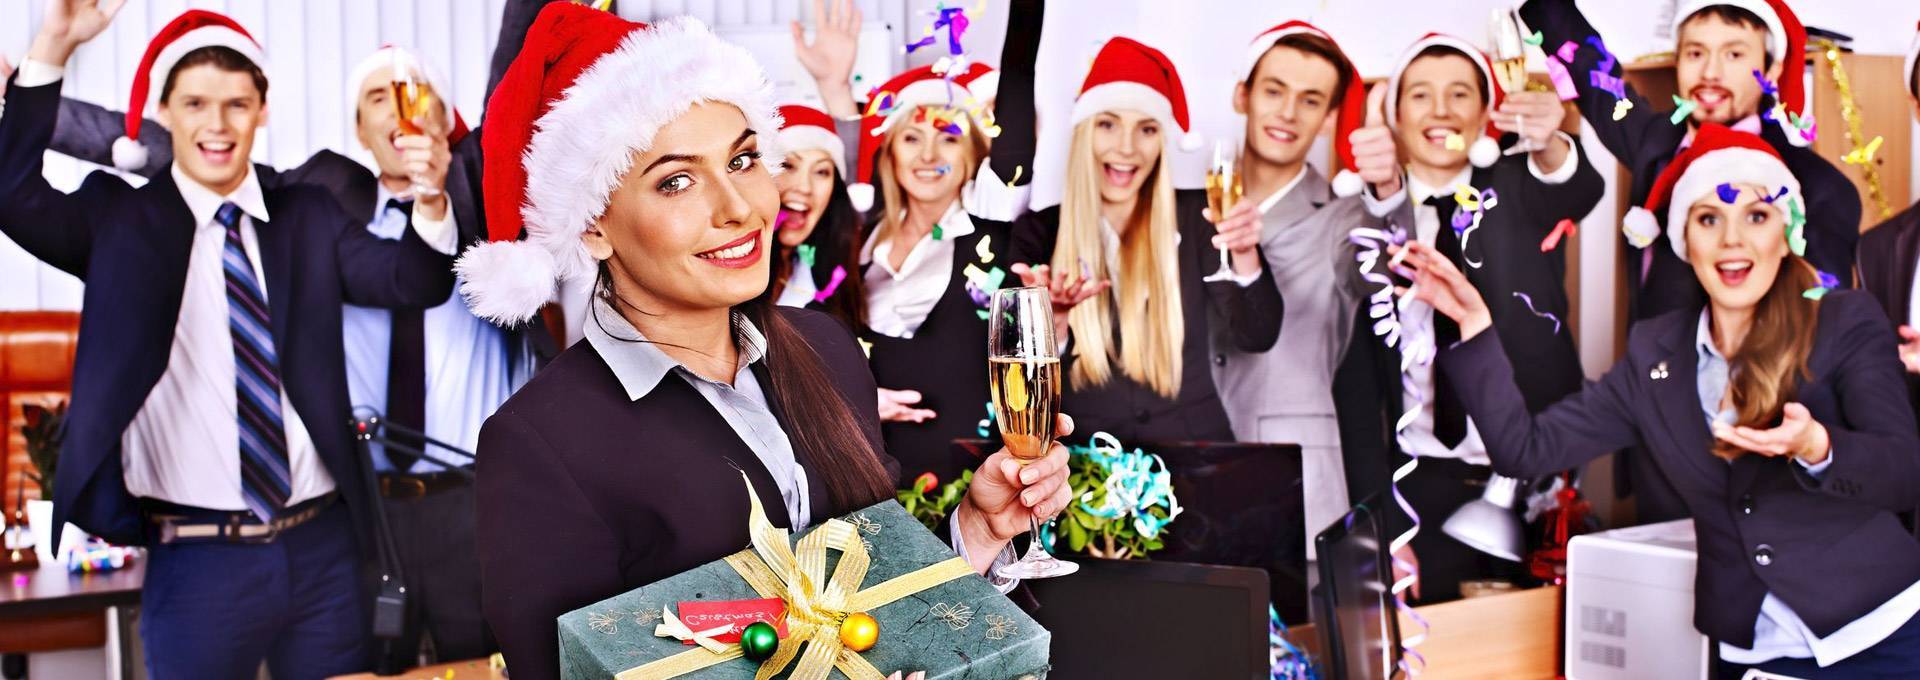 Новогодний корпоратив — как правильно организовать праздник на работе